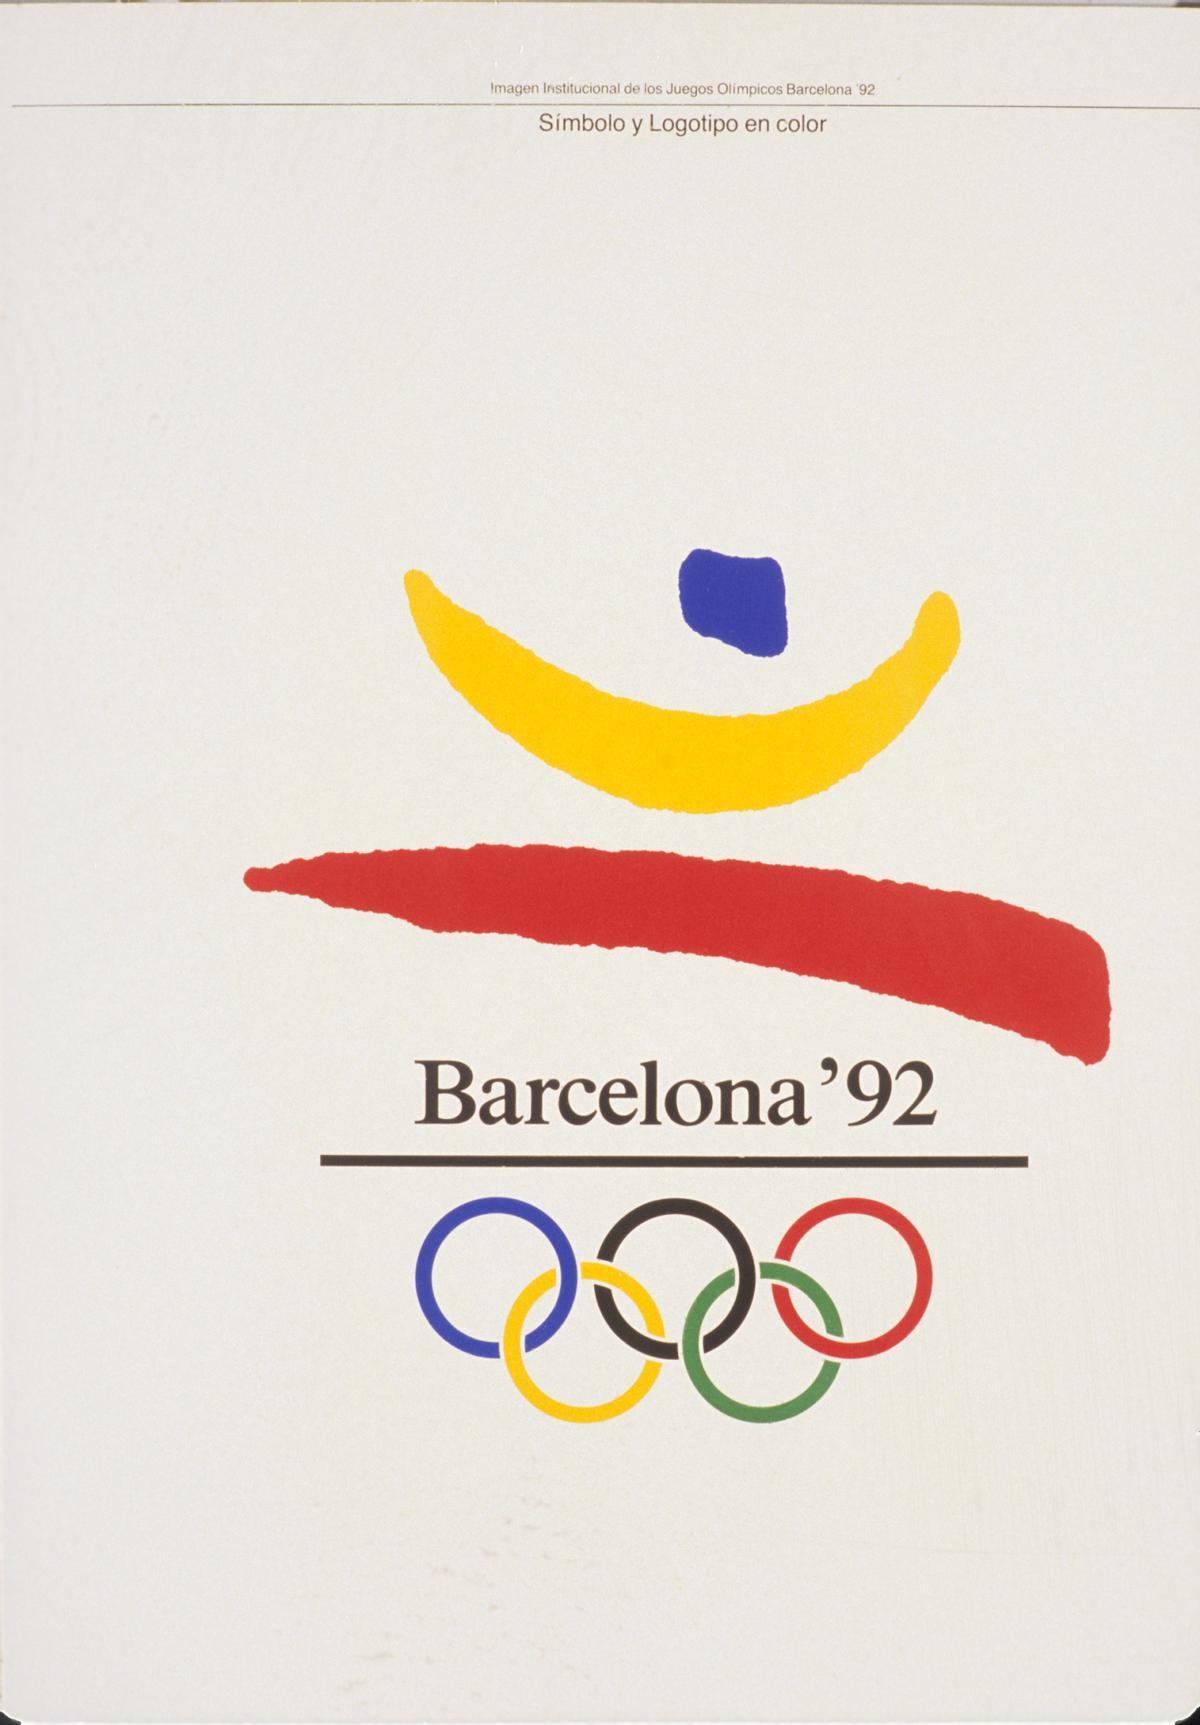 El cartel de los Juegos Olímpicos de Barcelona 92